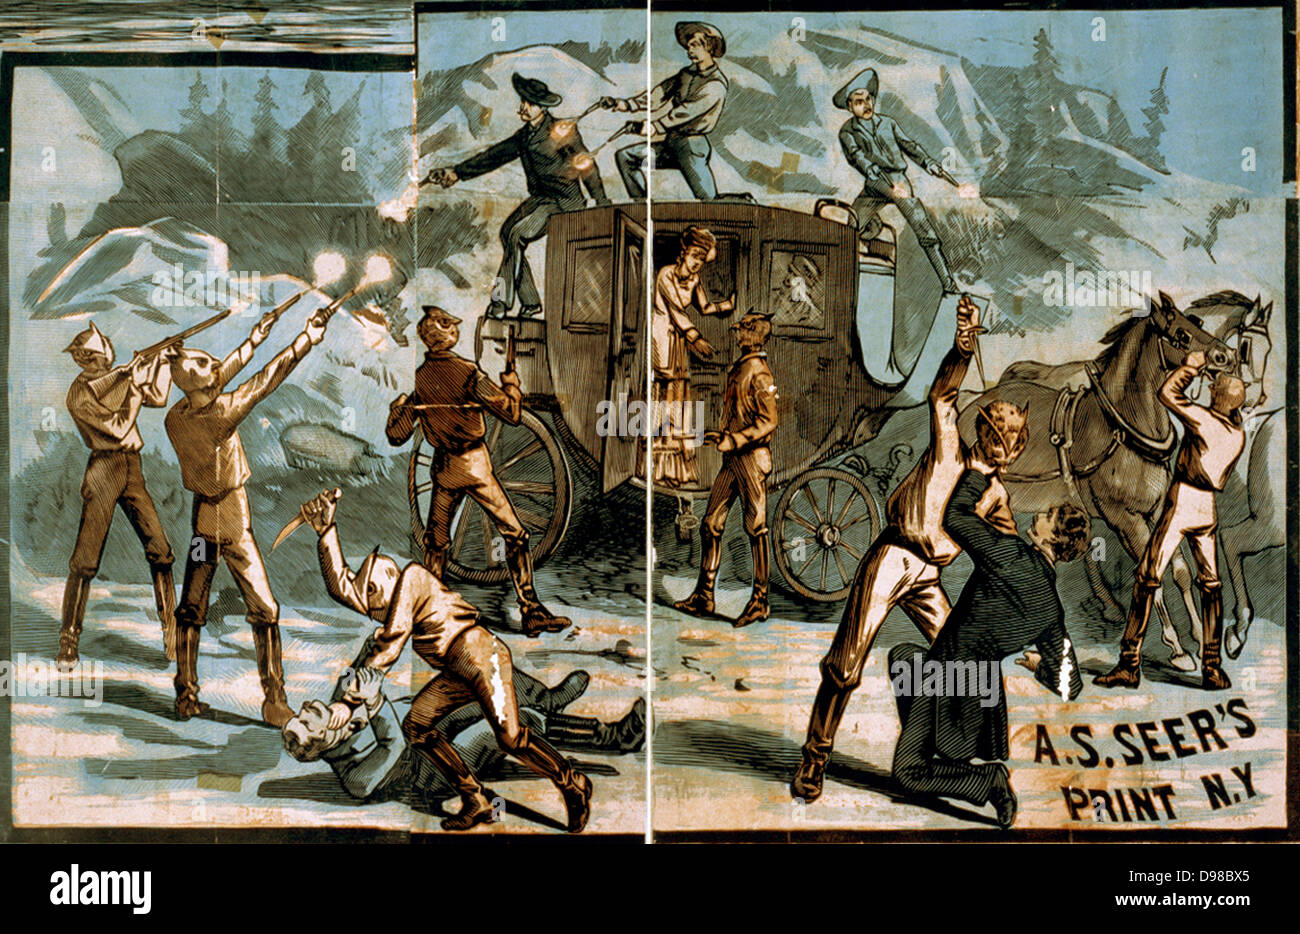 Vignettes de scènes de l'ouest Créateur(s) : A.S. Seer., 1881 ? Banque D'Images